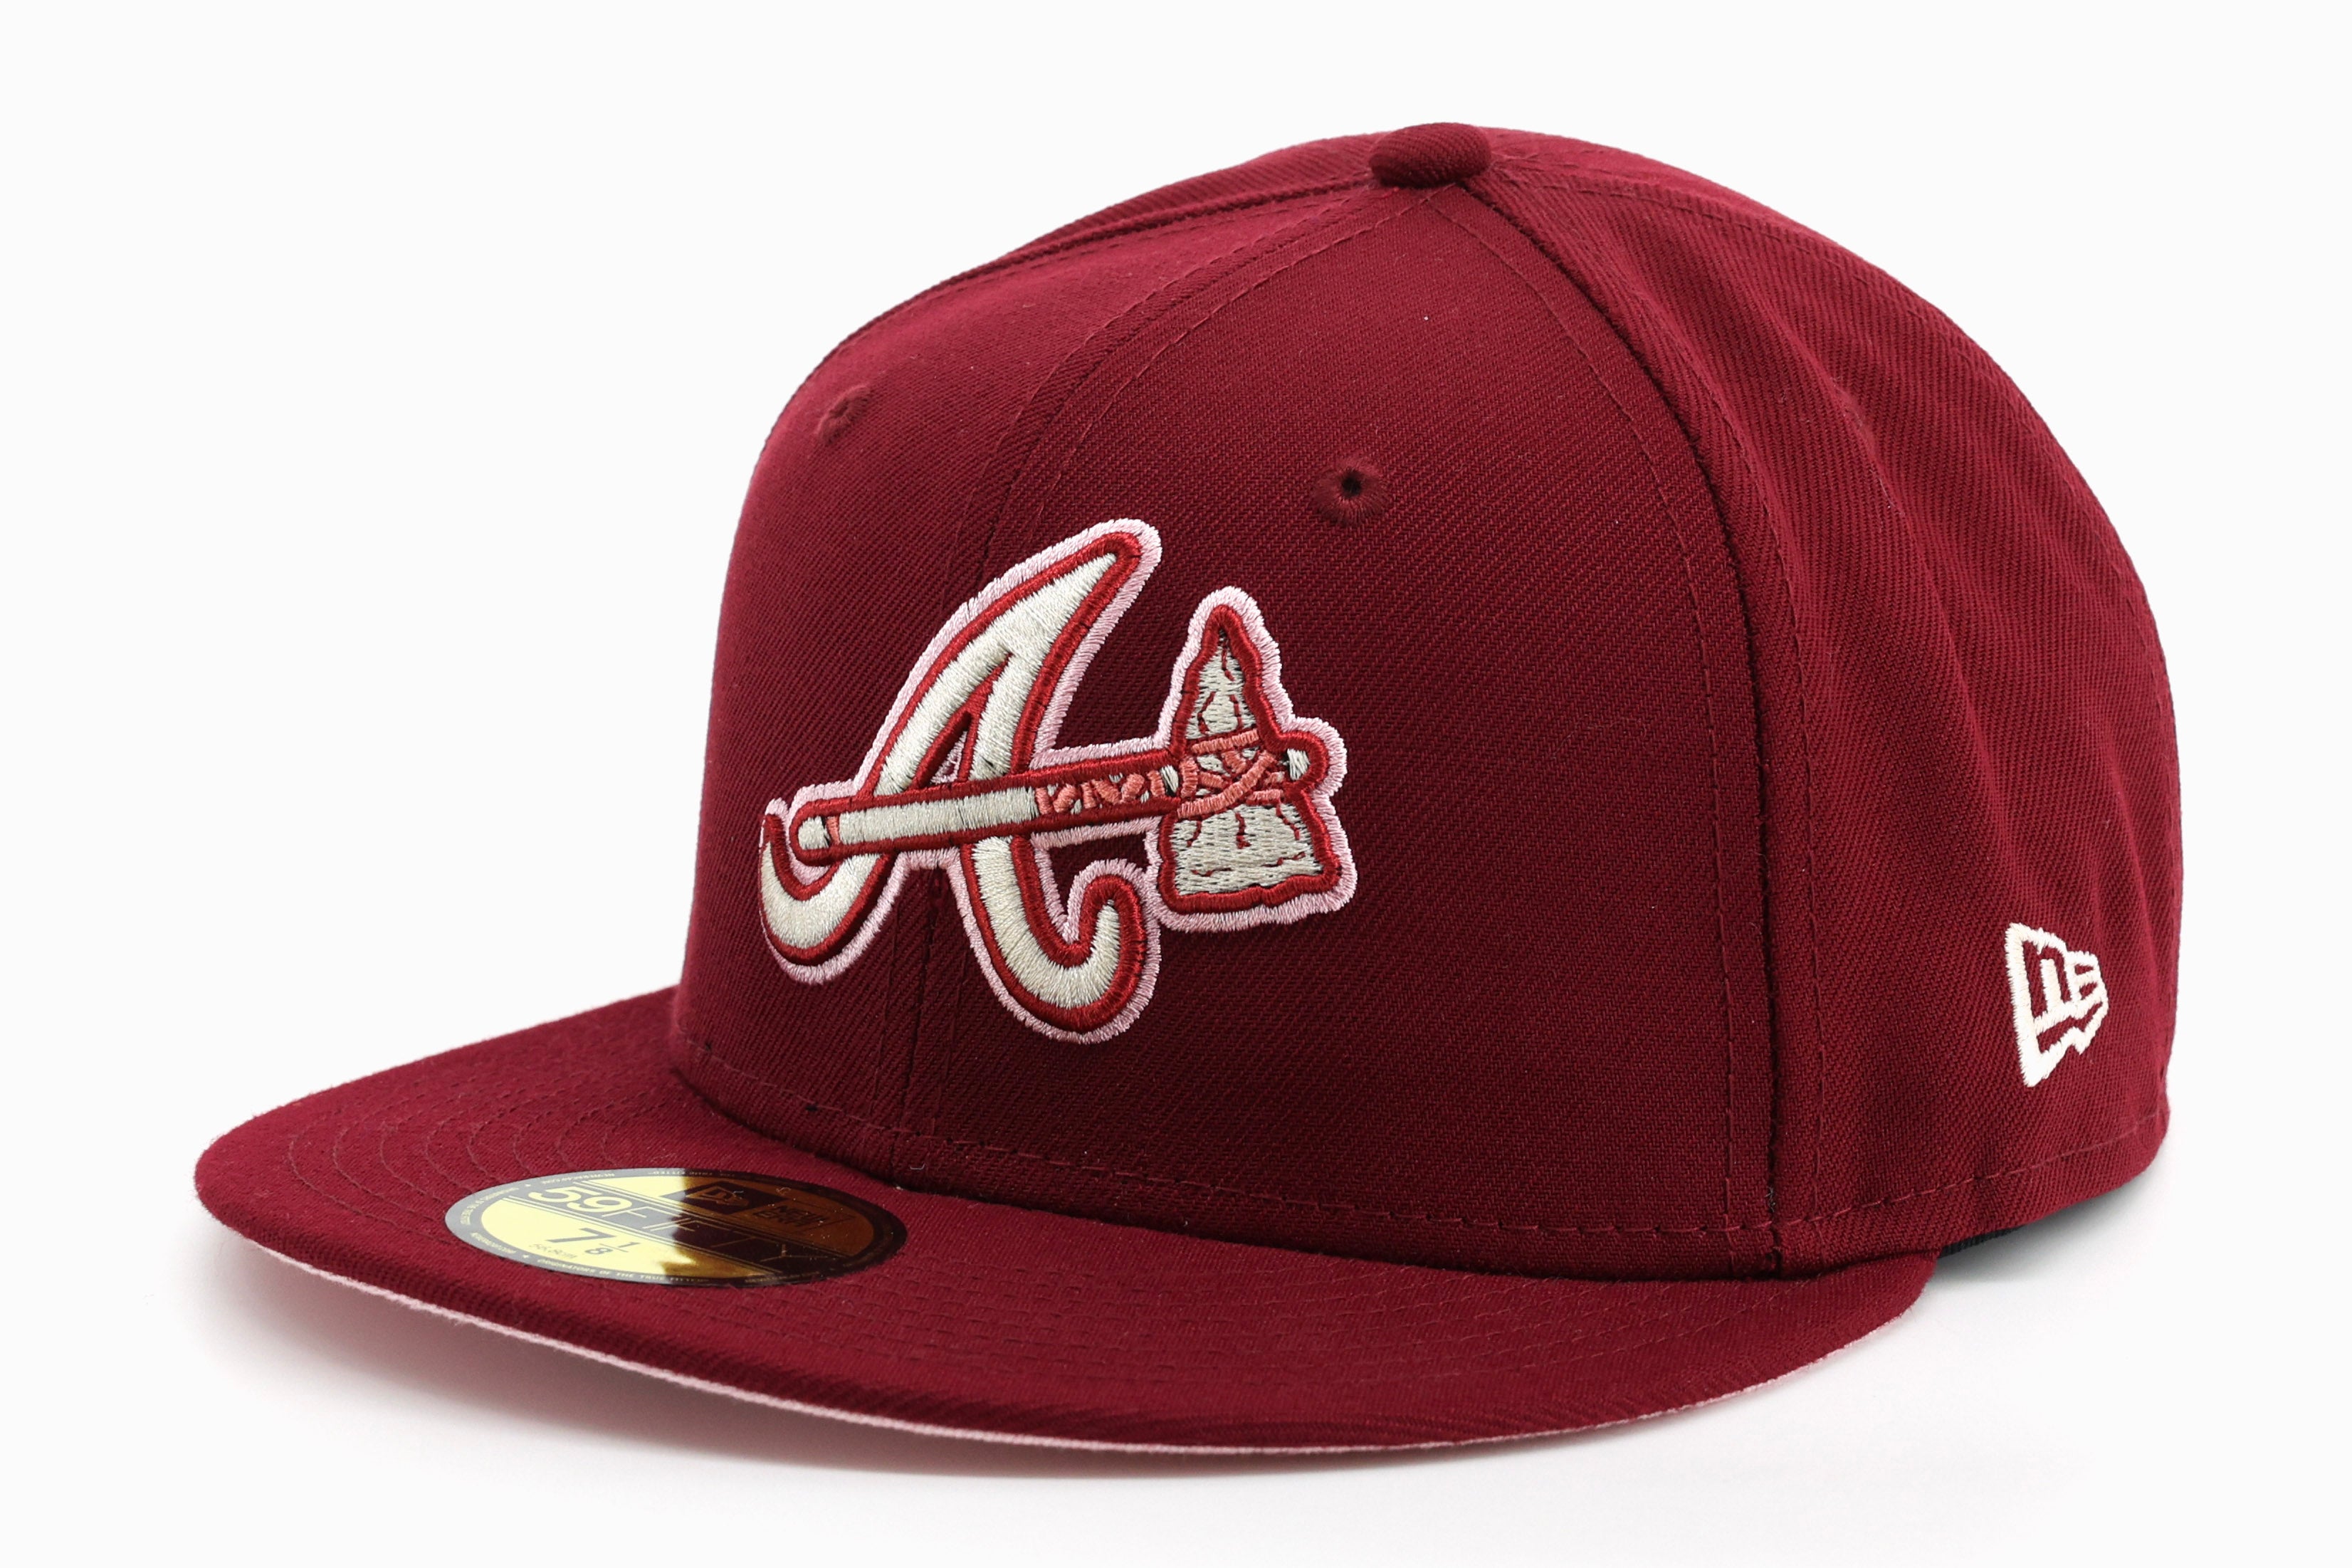 New Era 59 / 50 Hat - Atlanta Braves - Burgundy